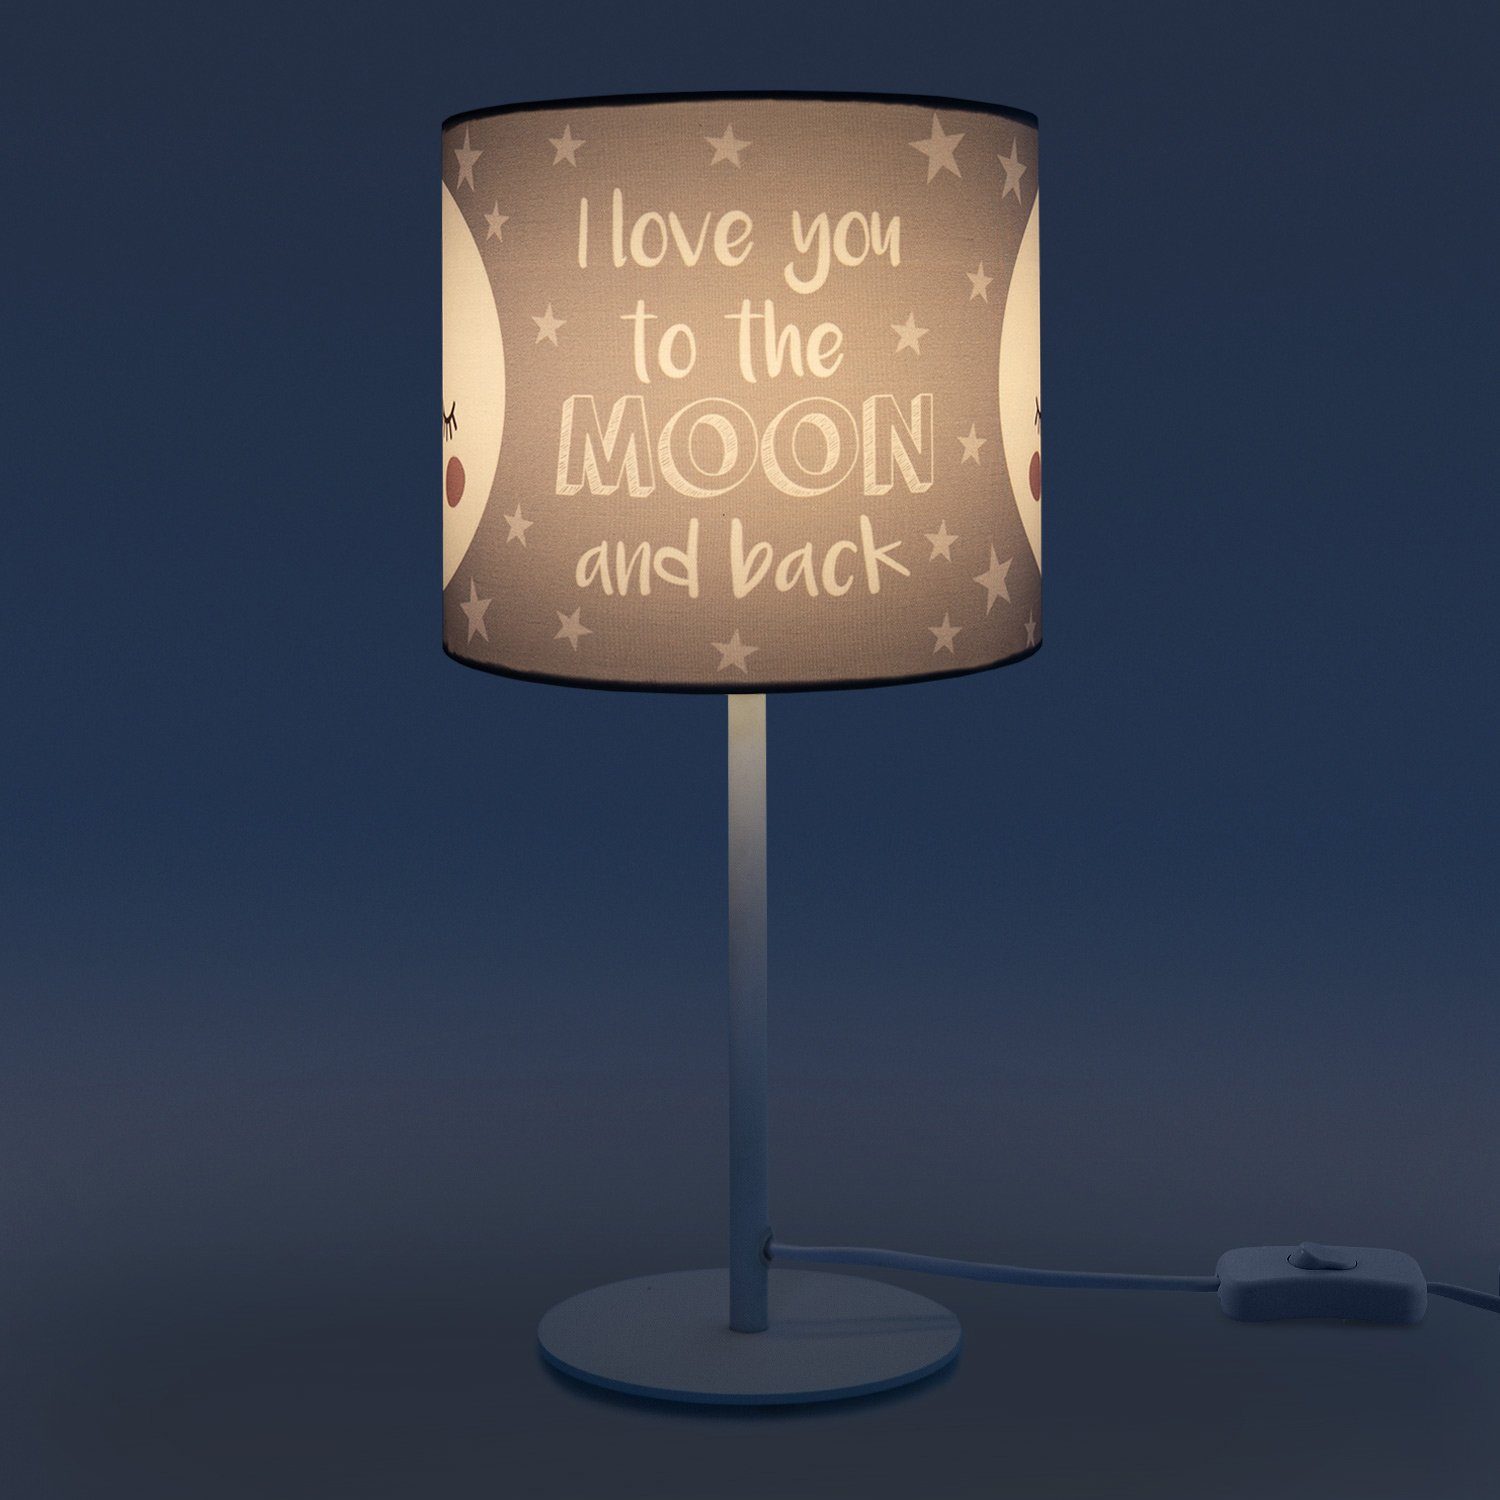 Paco Home Tischleuchte Mond-Motiv, Kinderlampe Tischleuchte mit E14 Leuchtmittel, 103, ohne LED Aleyna Lampe Kinderzimmer